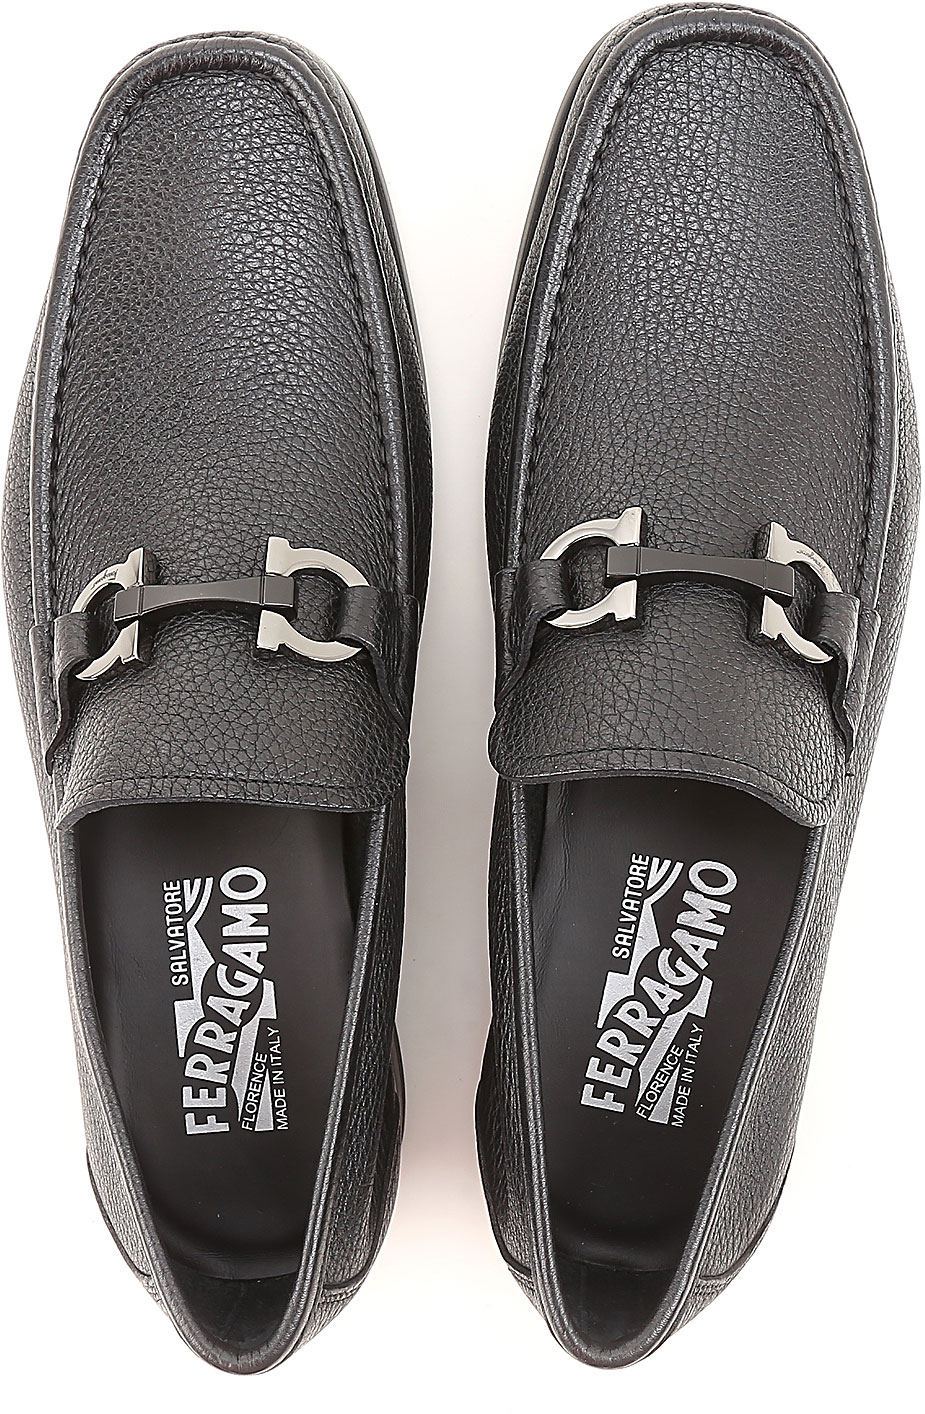 Mens Shoes Salvatore Ferragamo, Style code: 642848-grandioso-